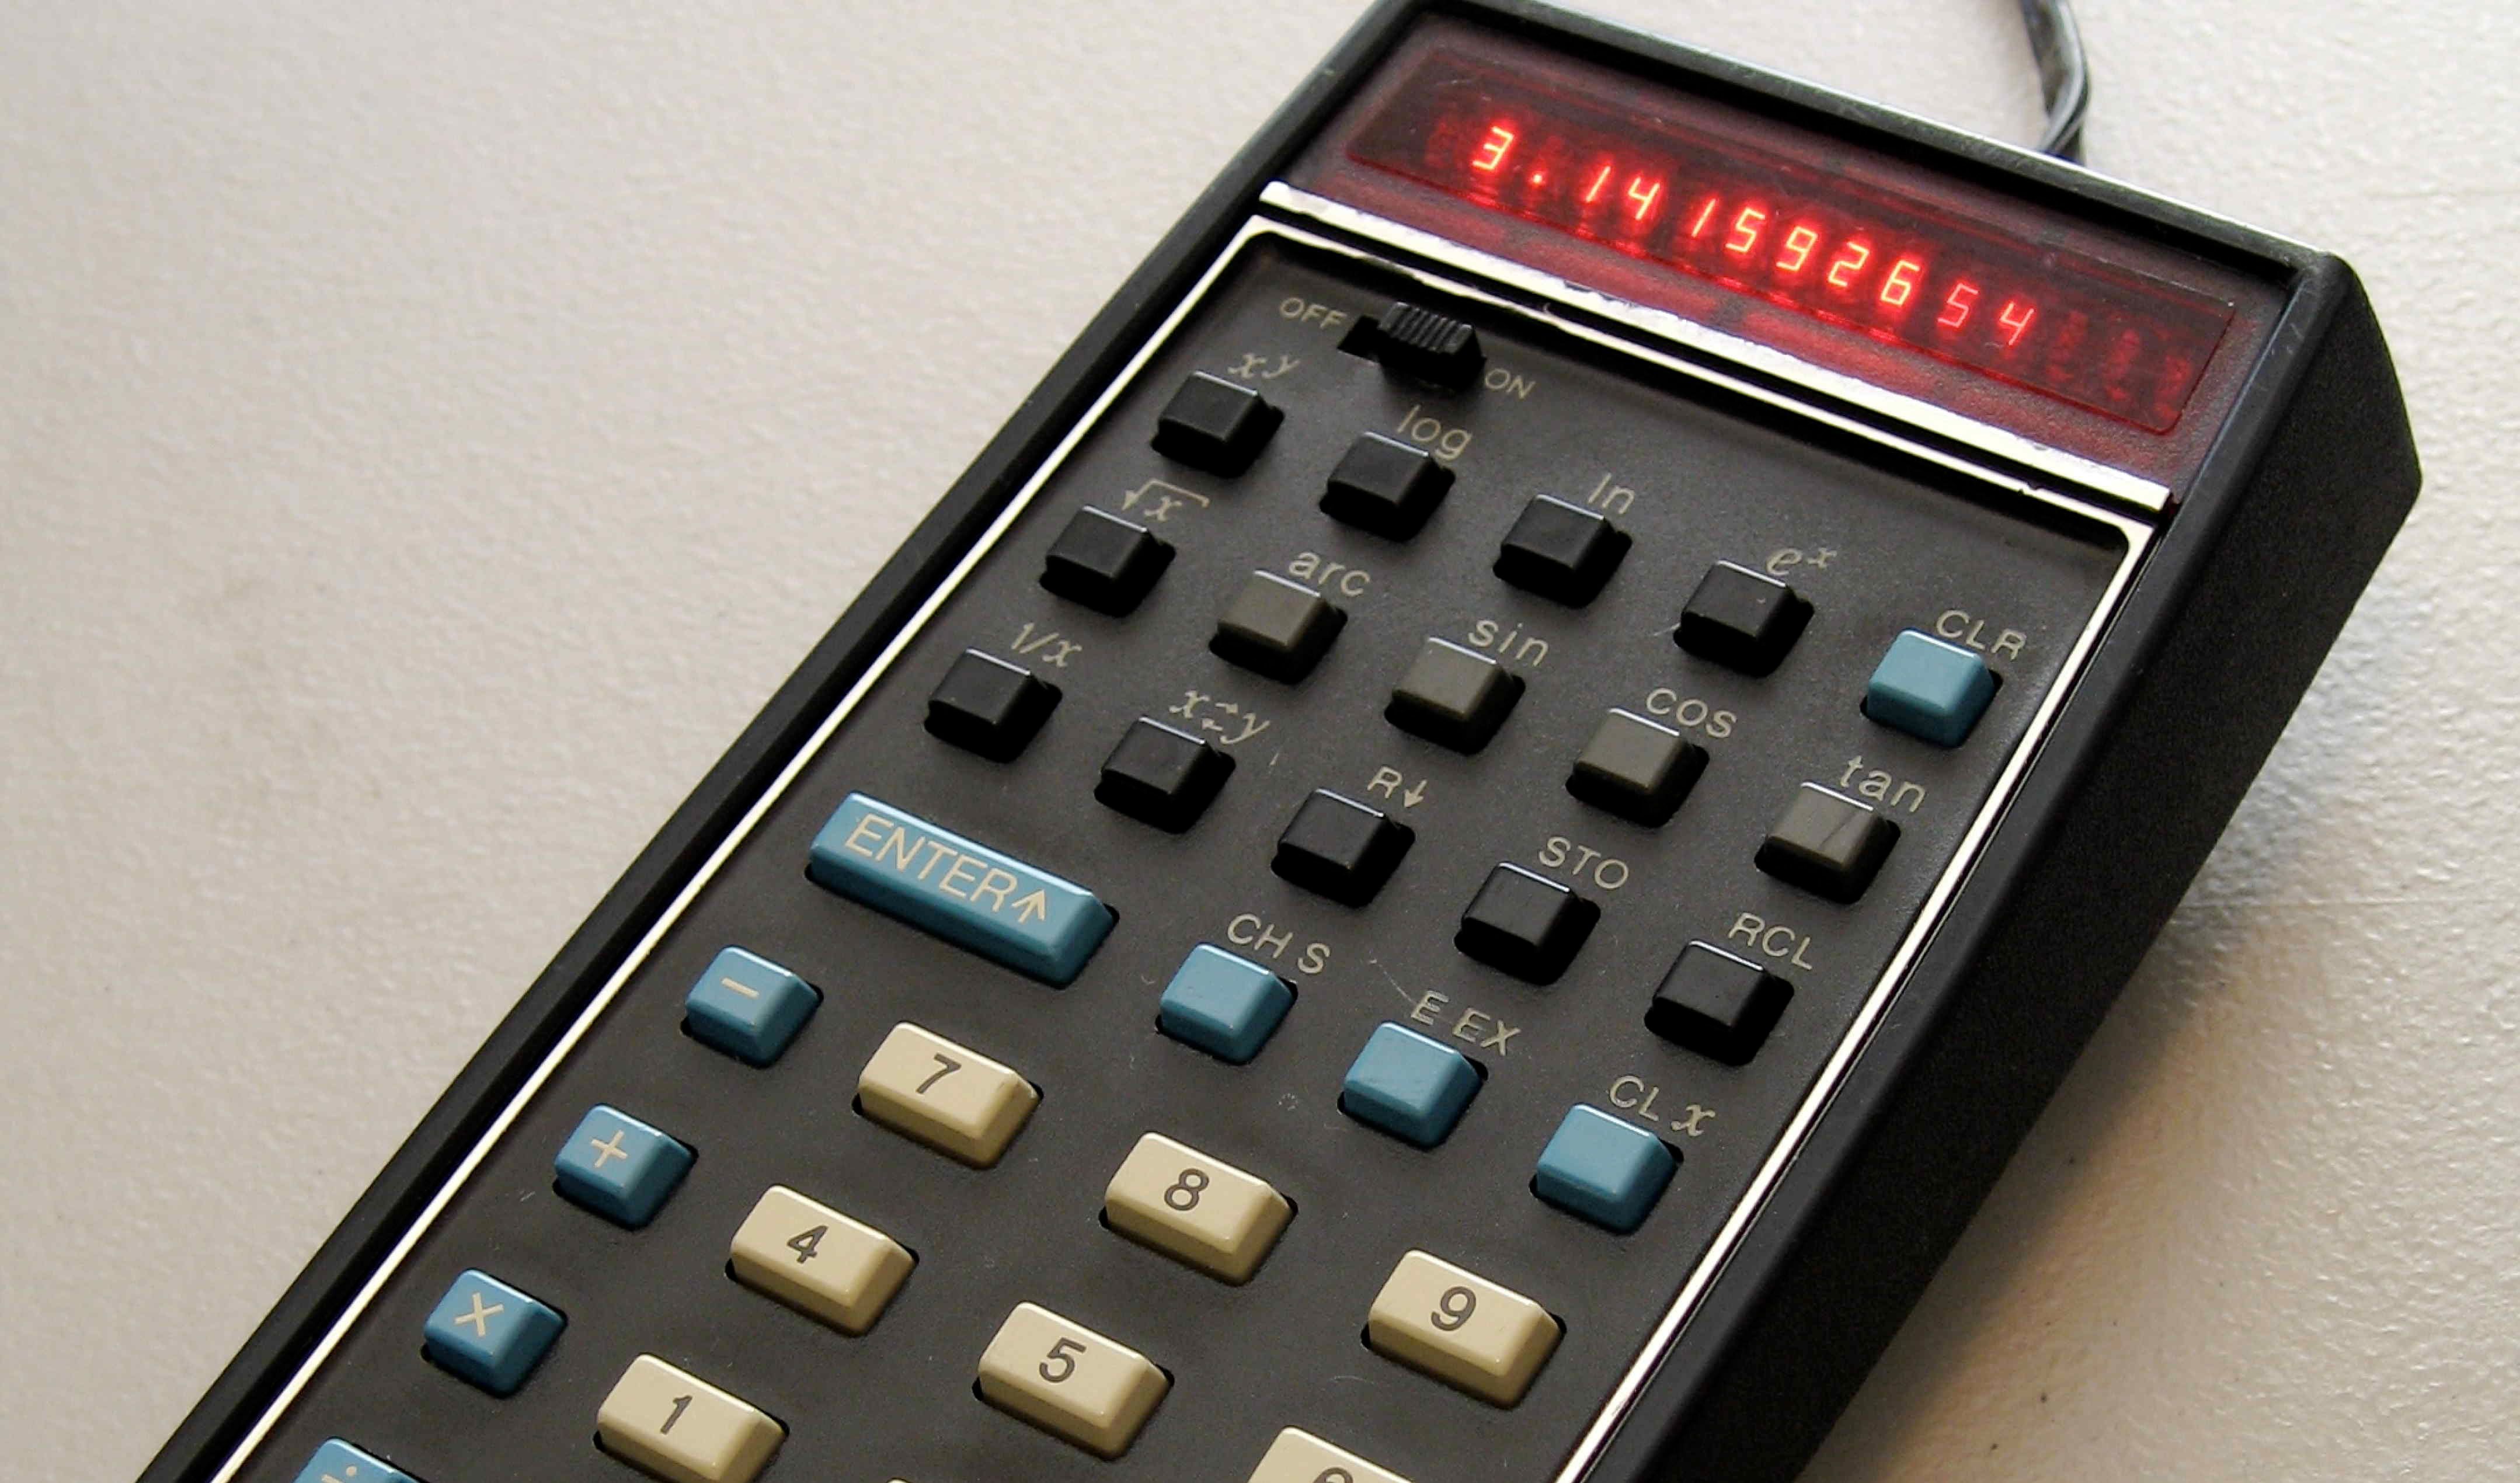 hp35 calculator